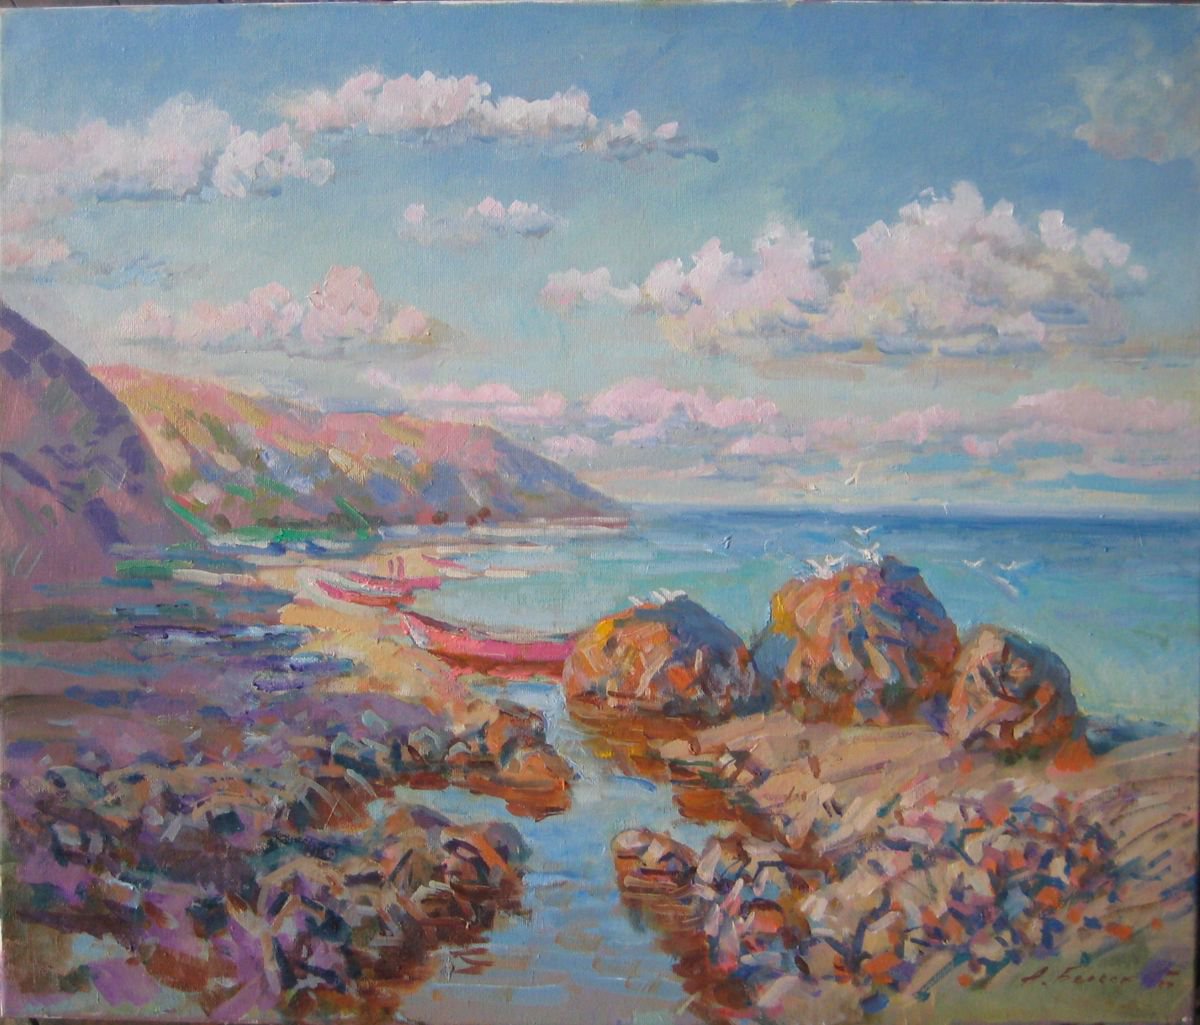 Seascape by Oleksandr Bielskyi